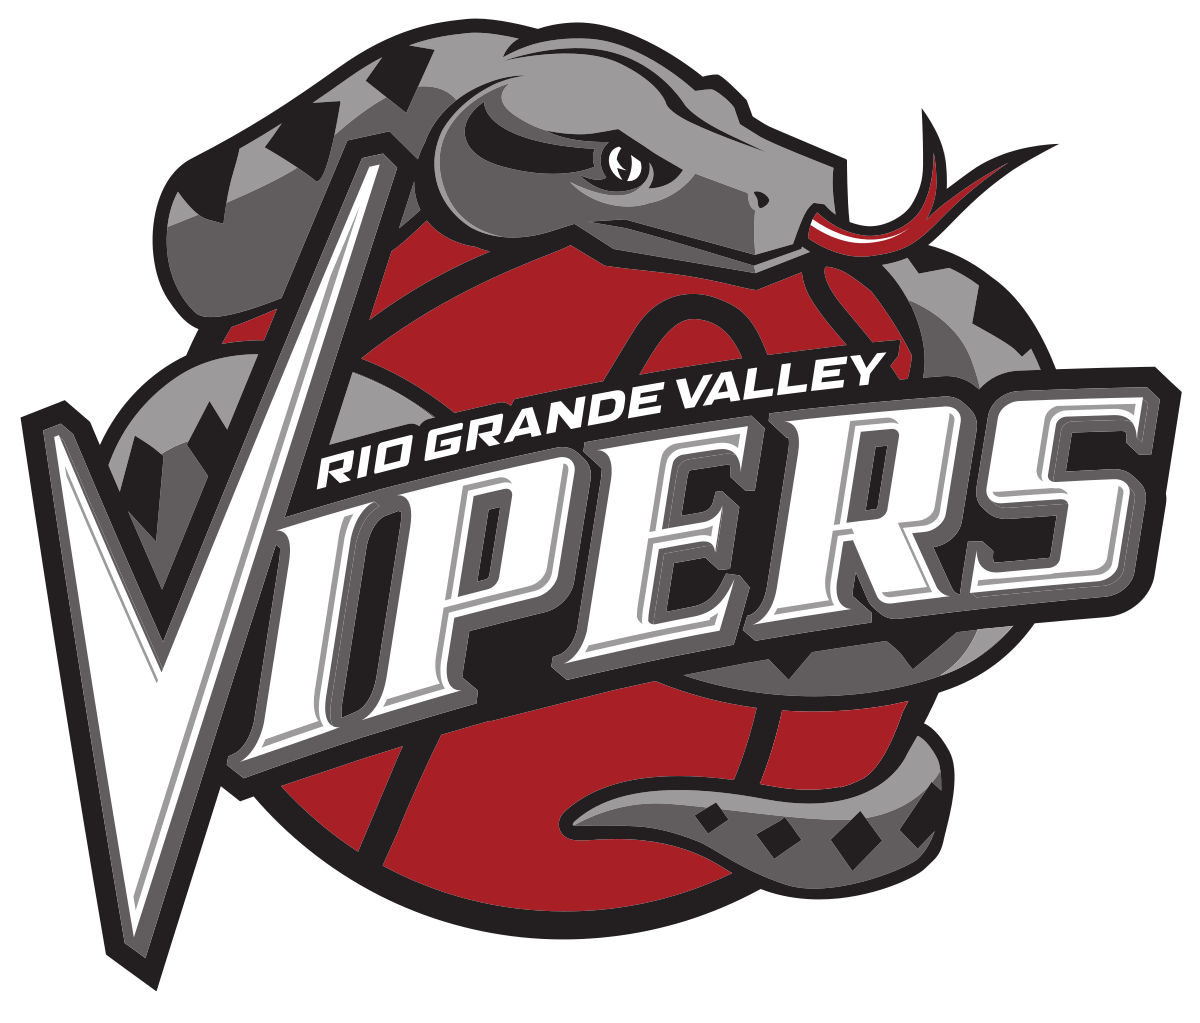 Red Viper Logo - Rio Grande Valley Vipers